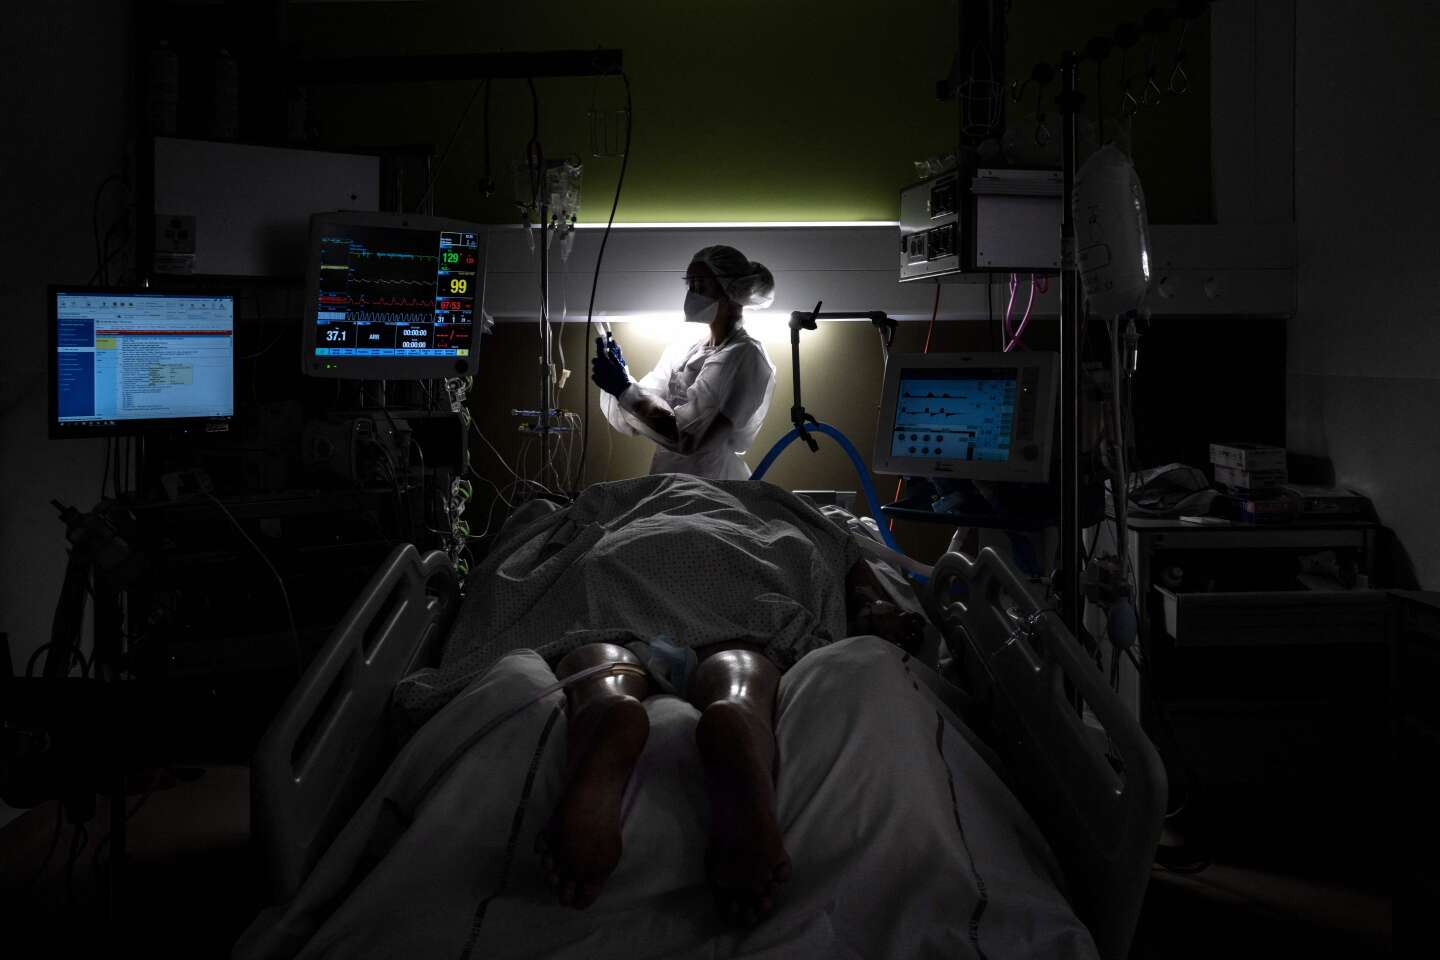 Fin de vie : les partisans du droit à mourir et les soignants de médecine palliative en opposition frontale